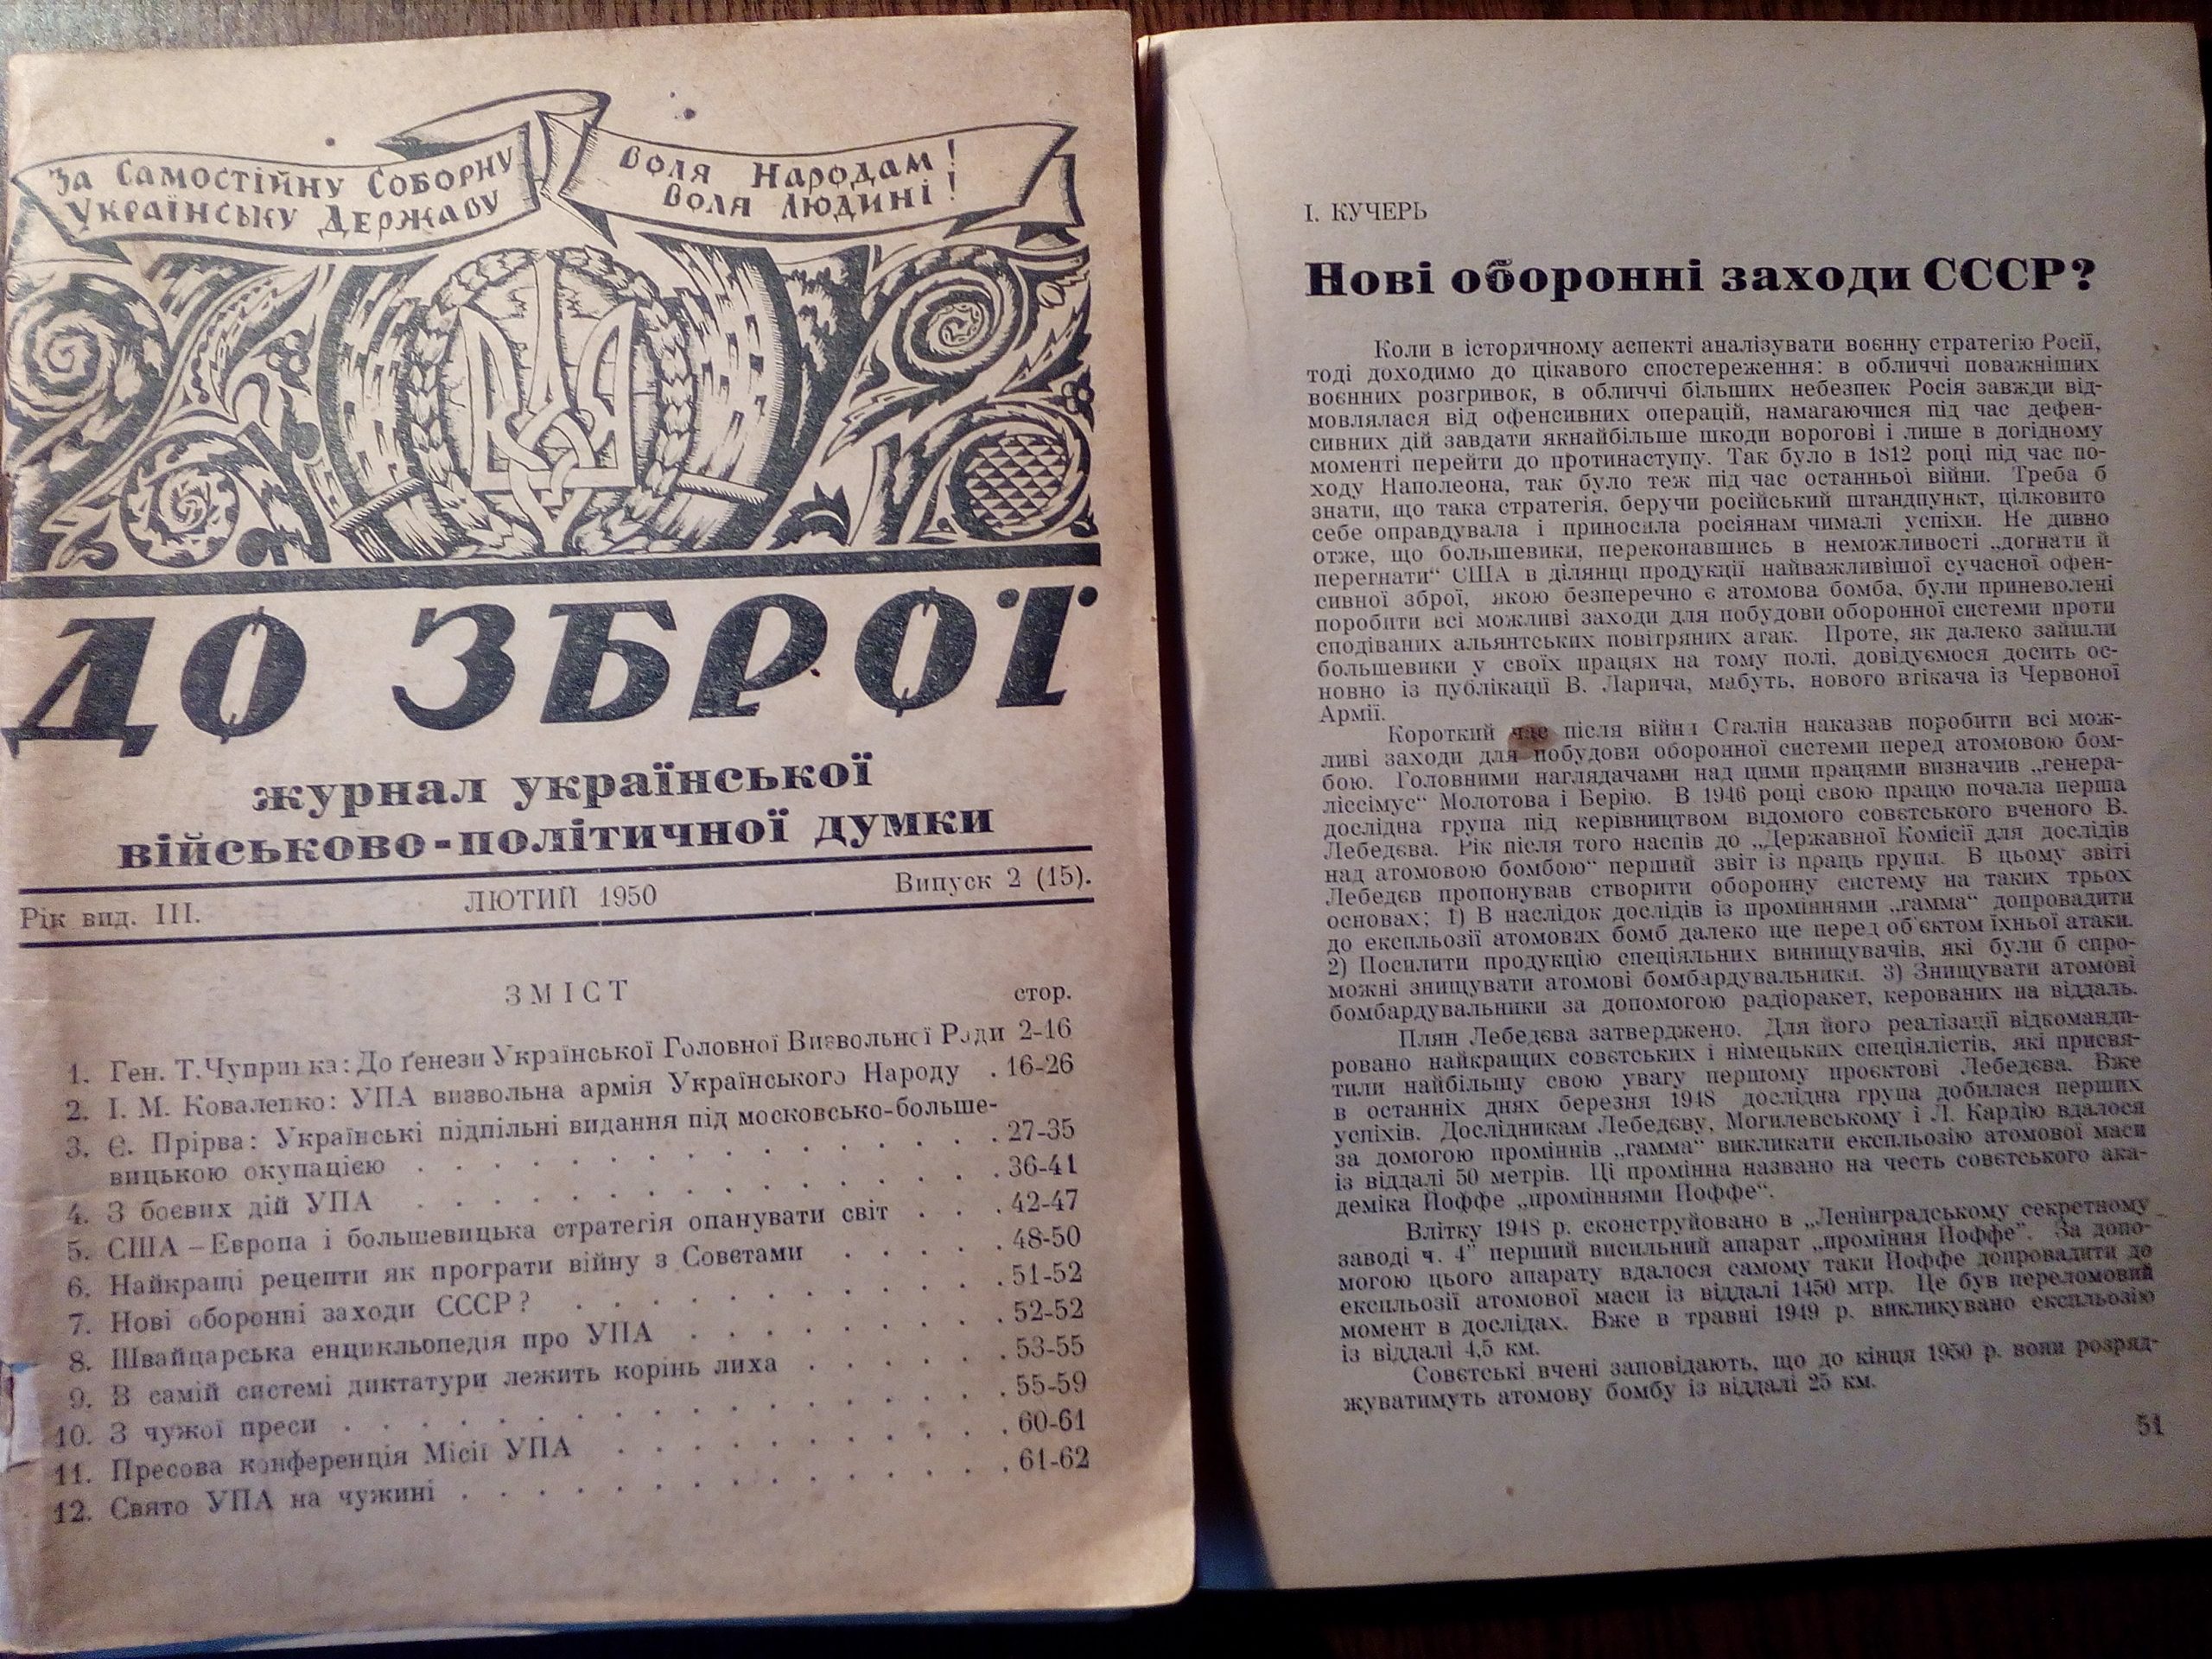 Журнал До Зброї, 1950 рік, вип.2(15) зі статею І.Кучеря (Полуляха)